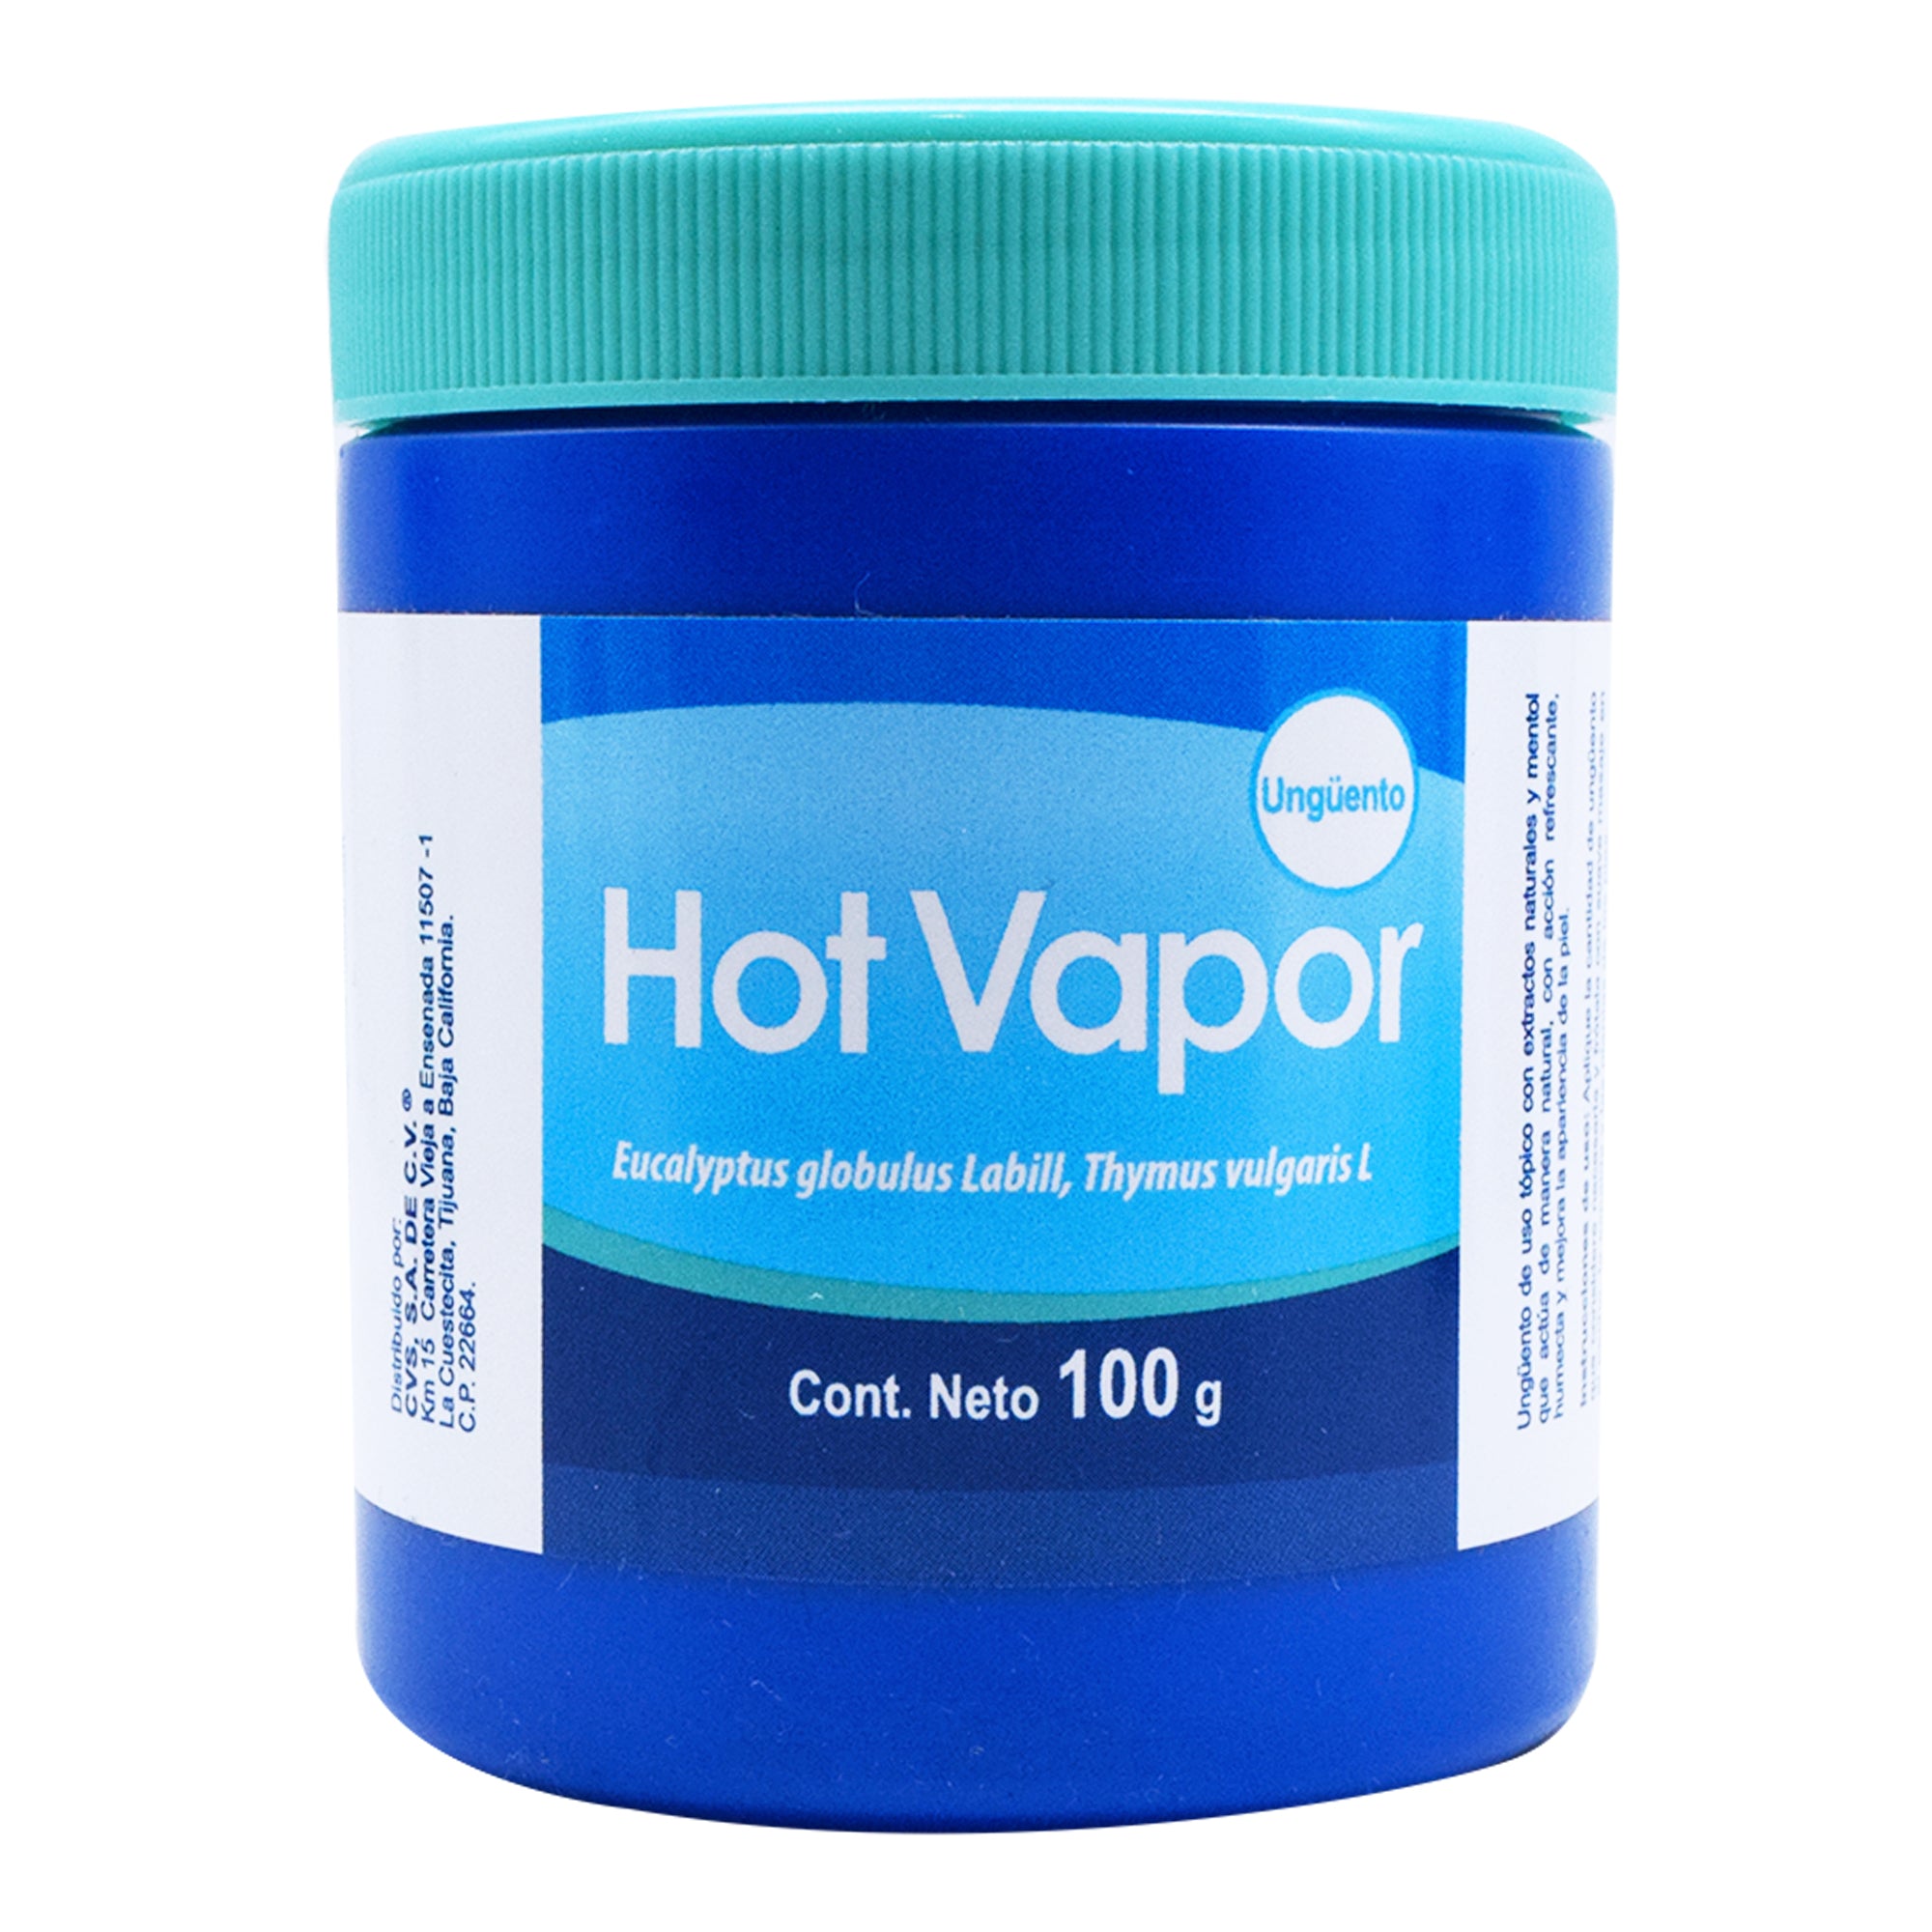 Hot vapor 100 g